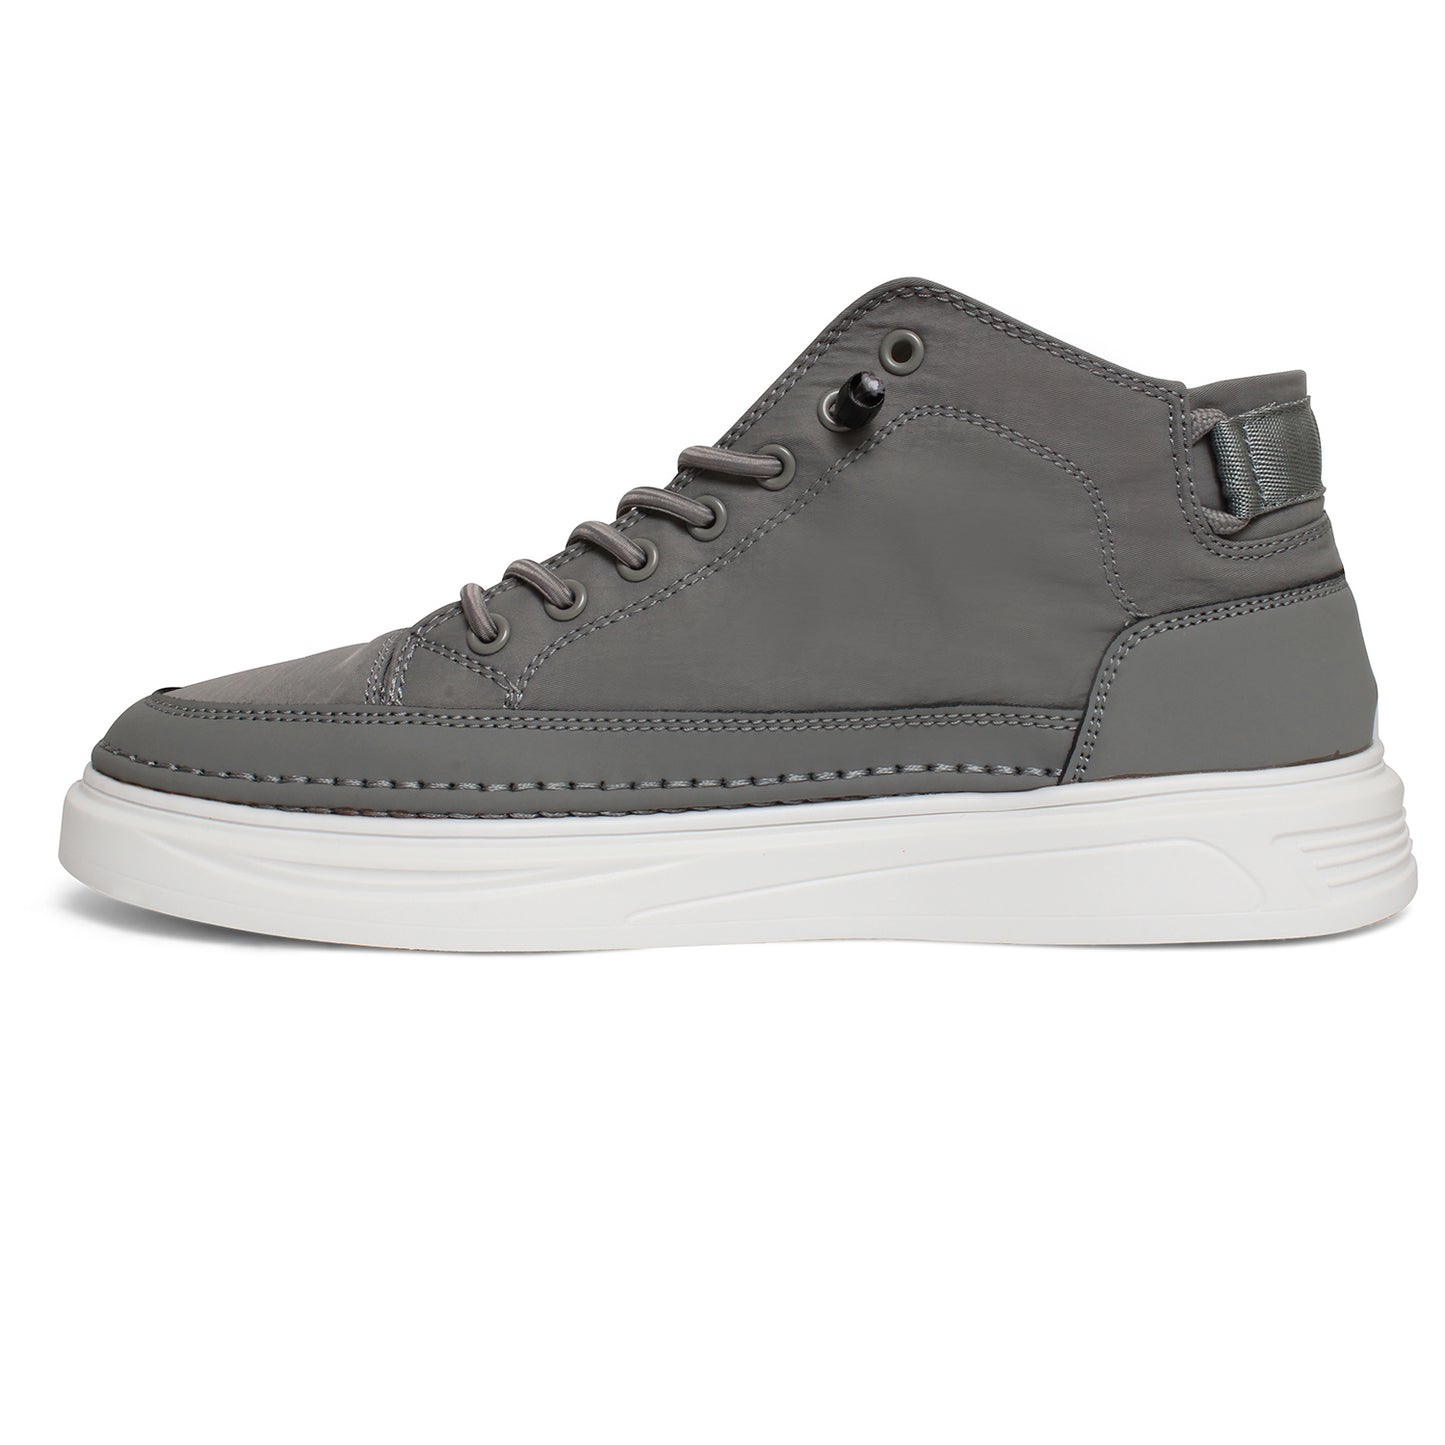 Tracer Sledge 2811 Sneaker for Men's Grey